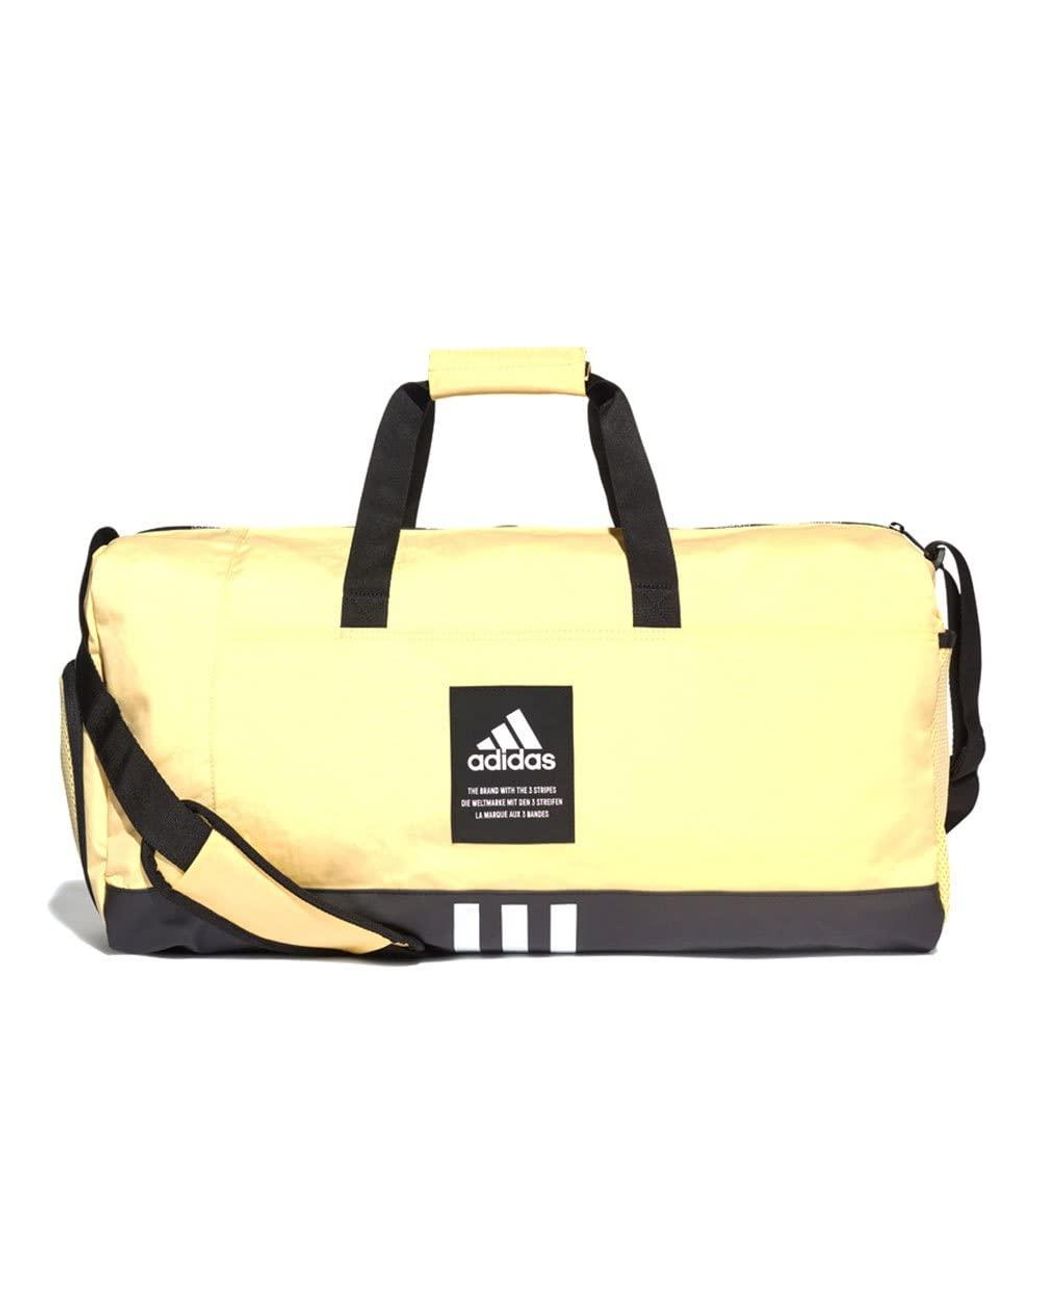 Damen Taschen Reisetaschen und Weekender adidas Synthetik 4ATHLTS Duffelbag M in Gelb 